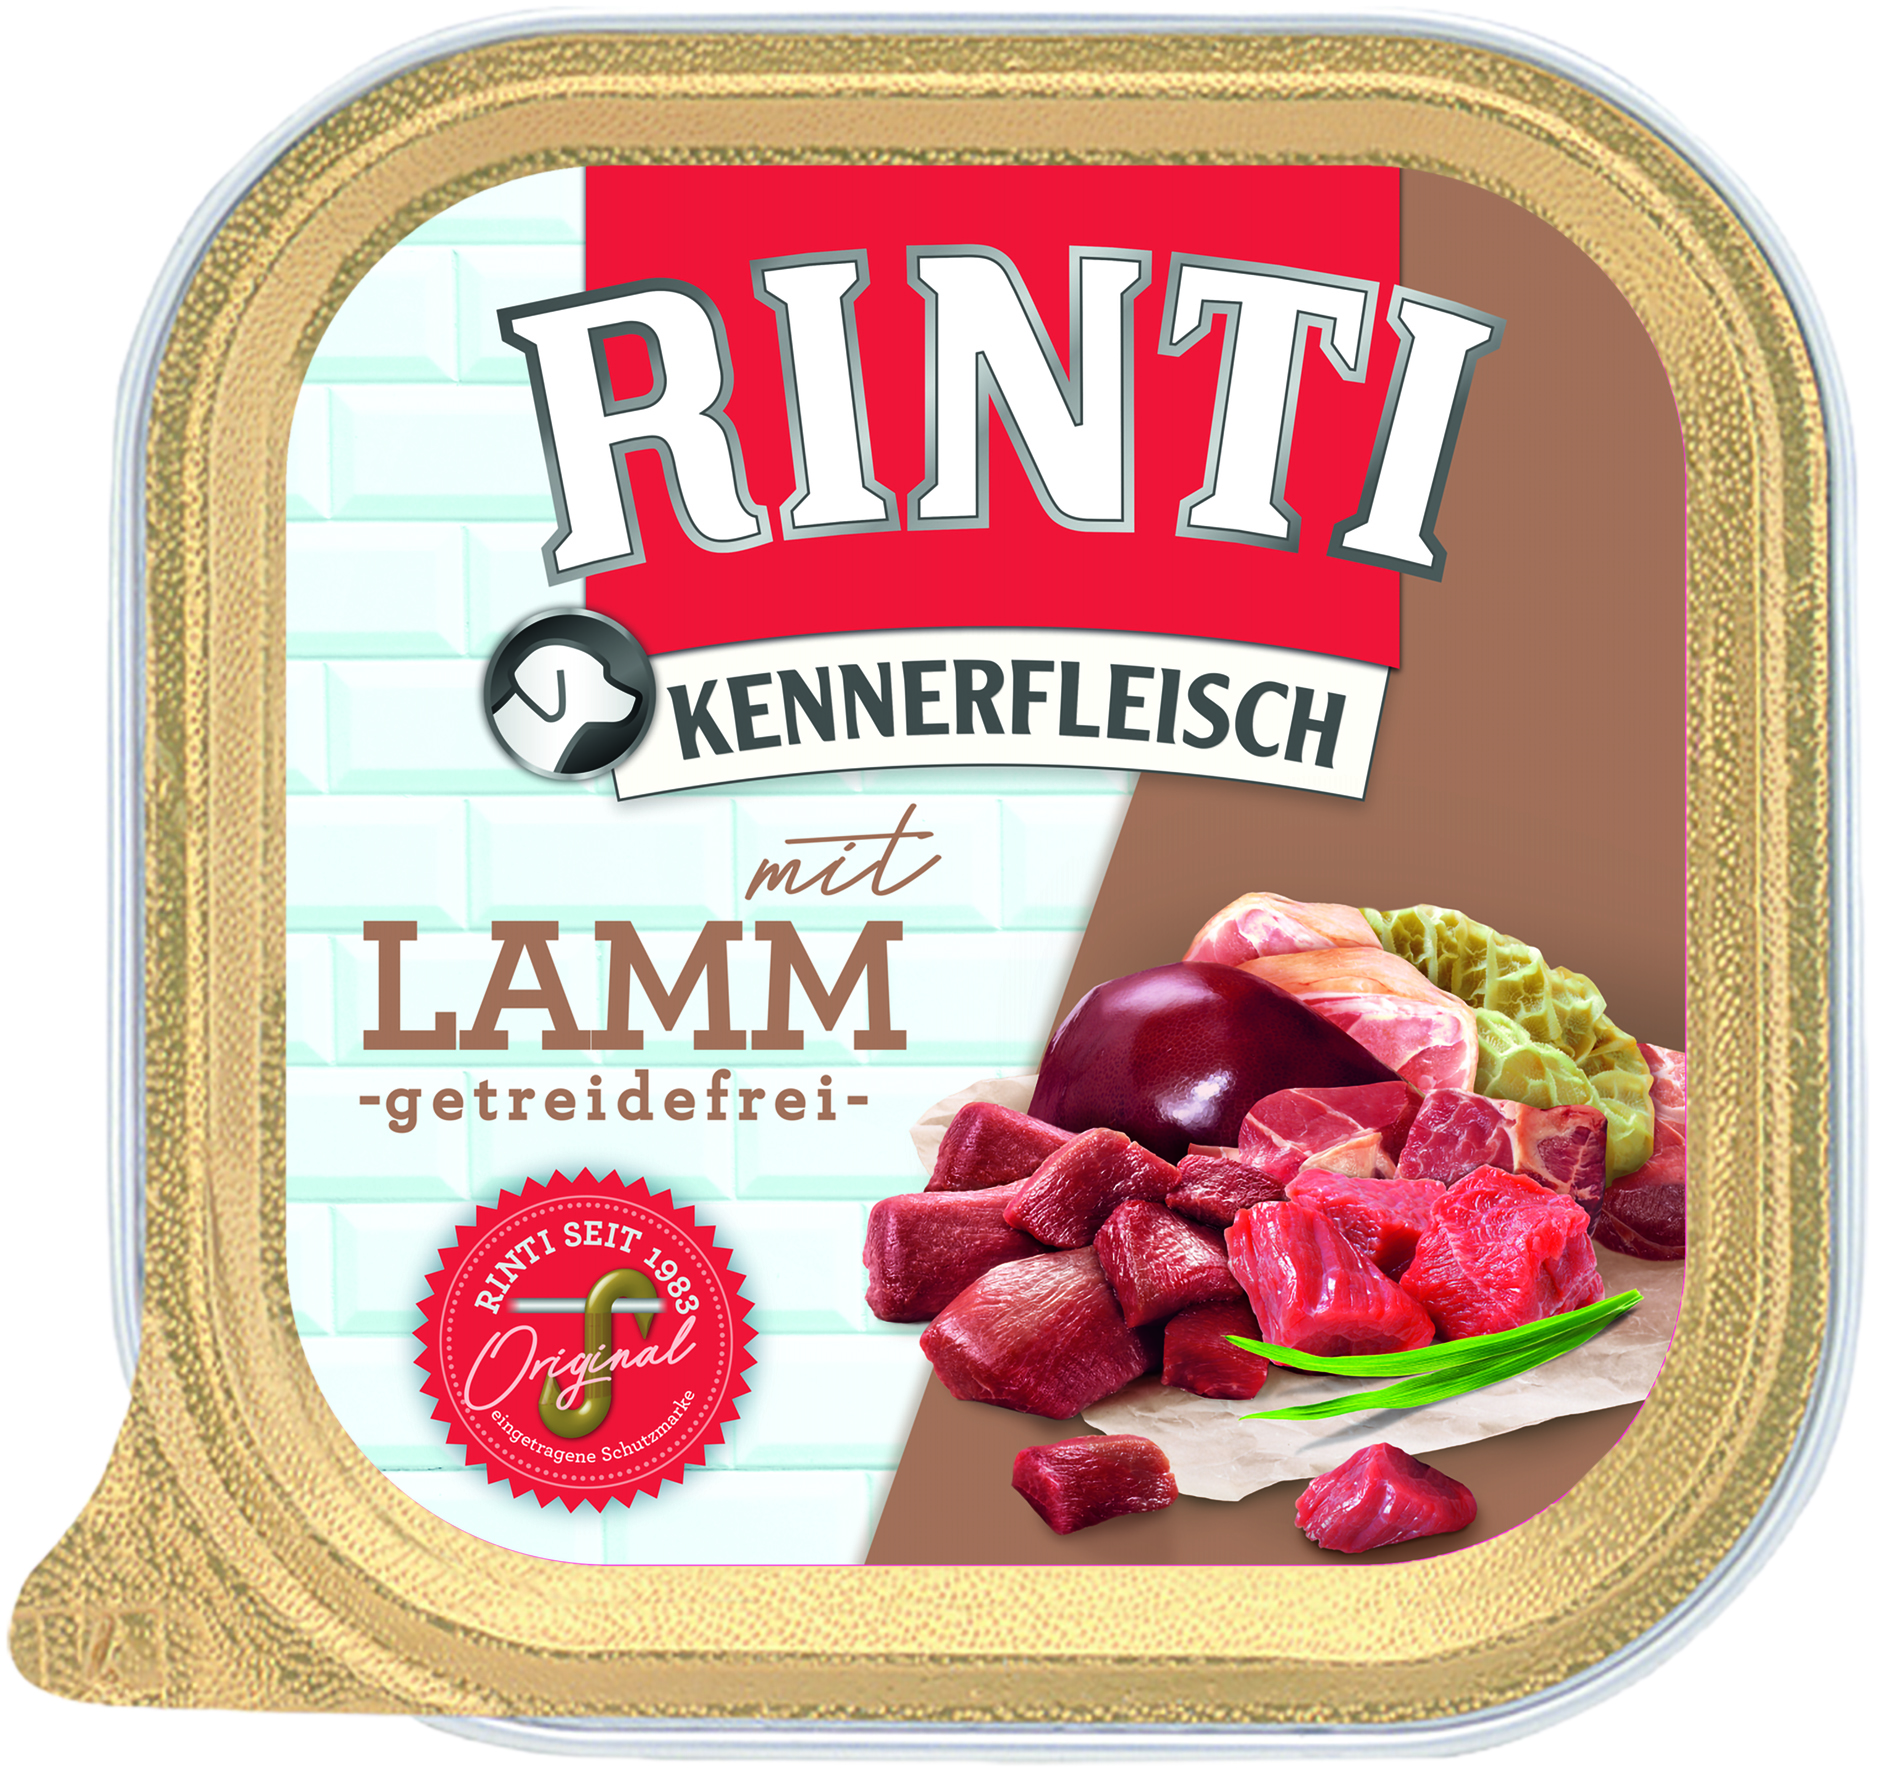 Rinti Kennerfleisch Plus Lamm 300g